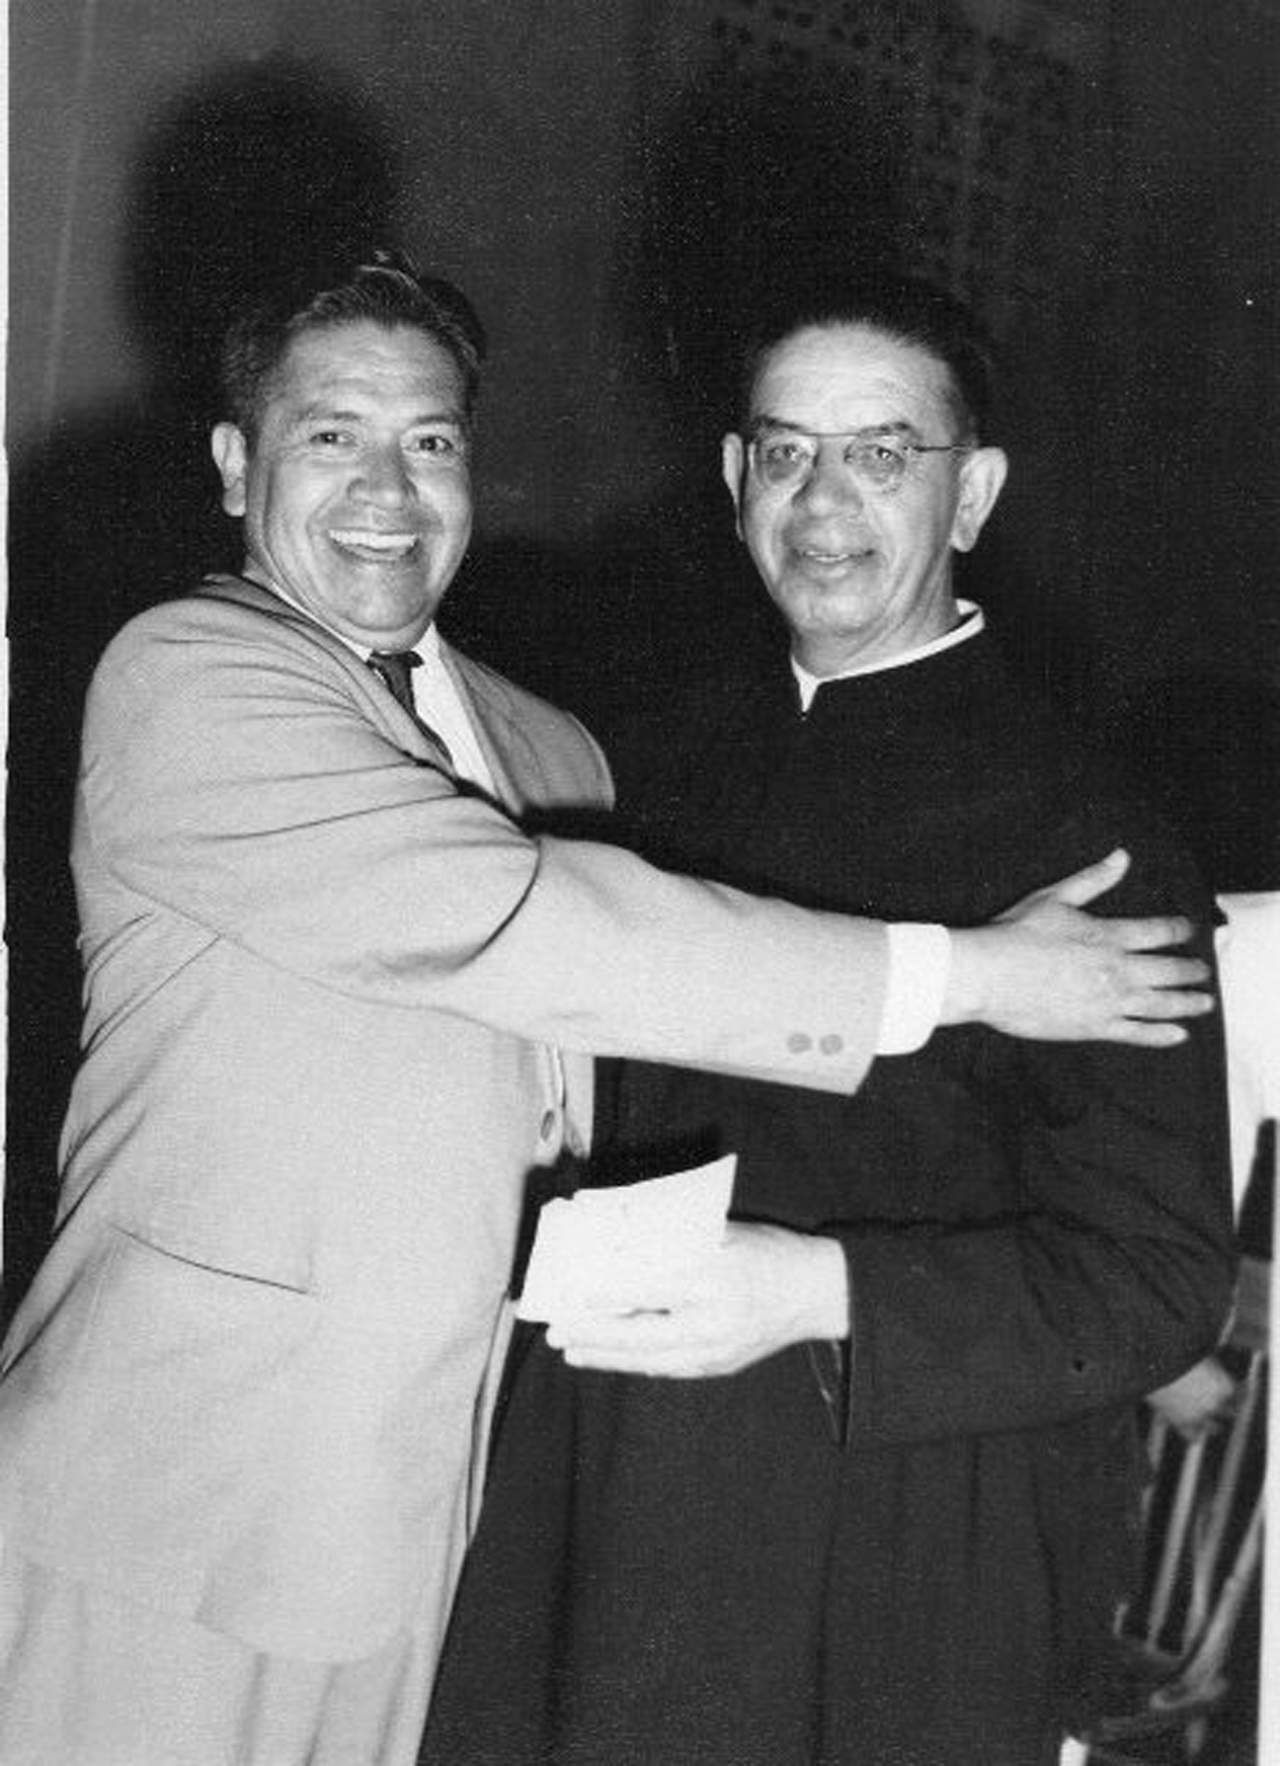 El P. Hernández Arciniega, recibiendo la Flor Natural de manos del sr. Juan Contreras Cárdenas, como triunfador del certamen de poesía en 1960.
